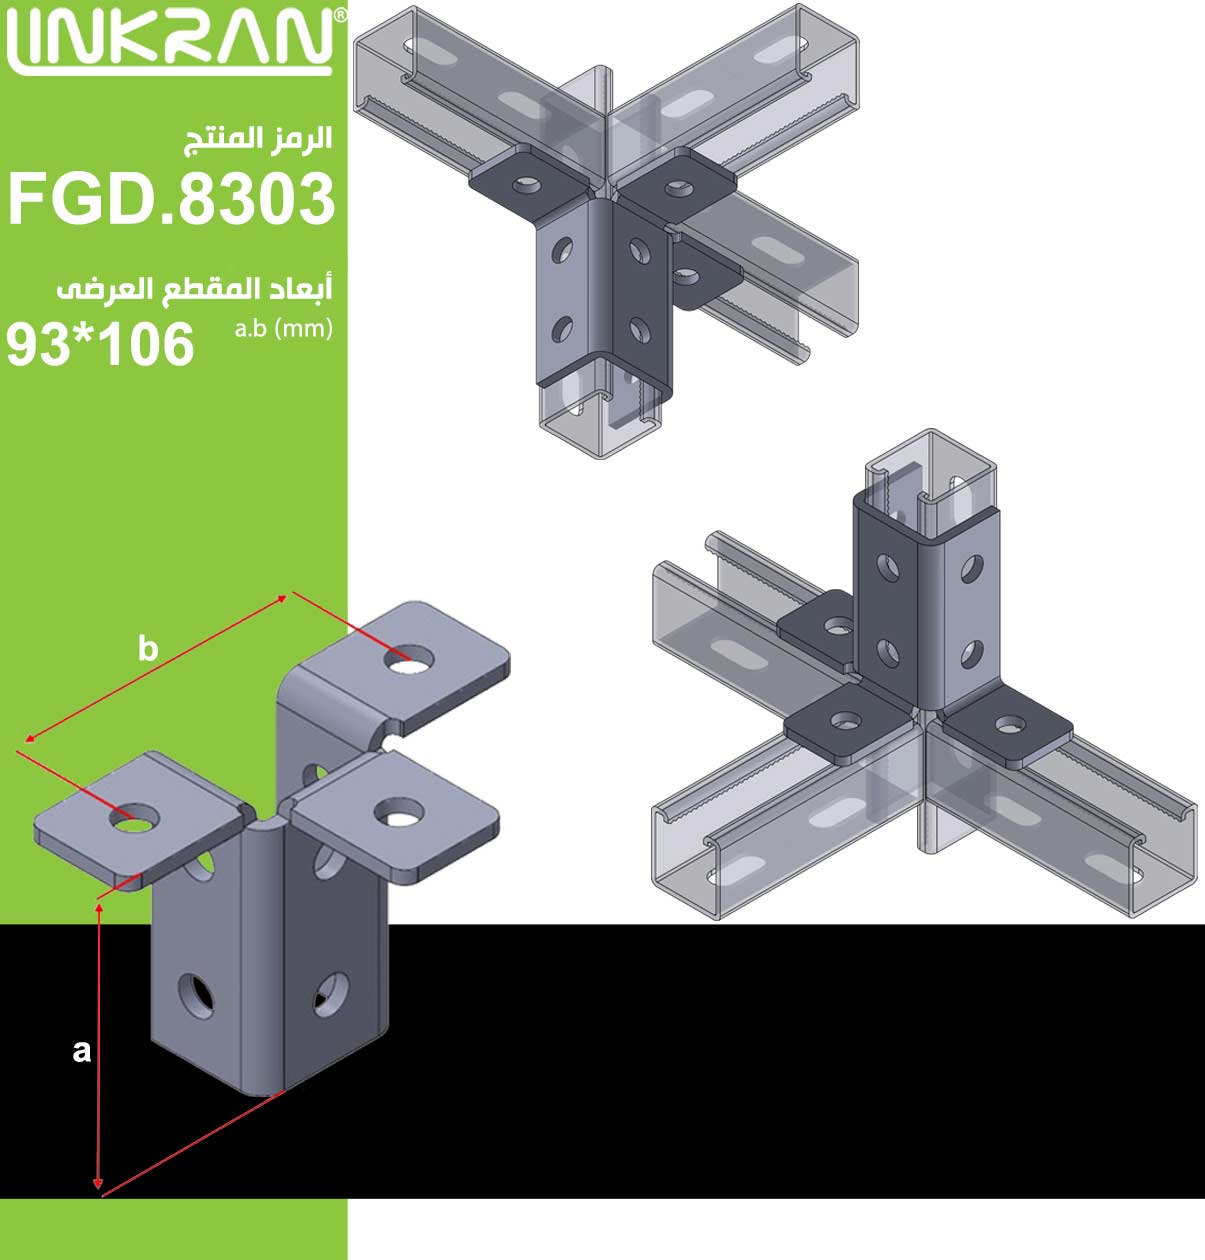 اتصال ثلاثة الحافة 9 حفرة لمحة عن جی - FGD.8303 - مجموعة لينكران الصناعية